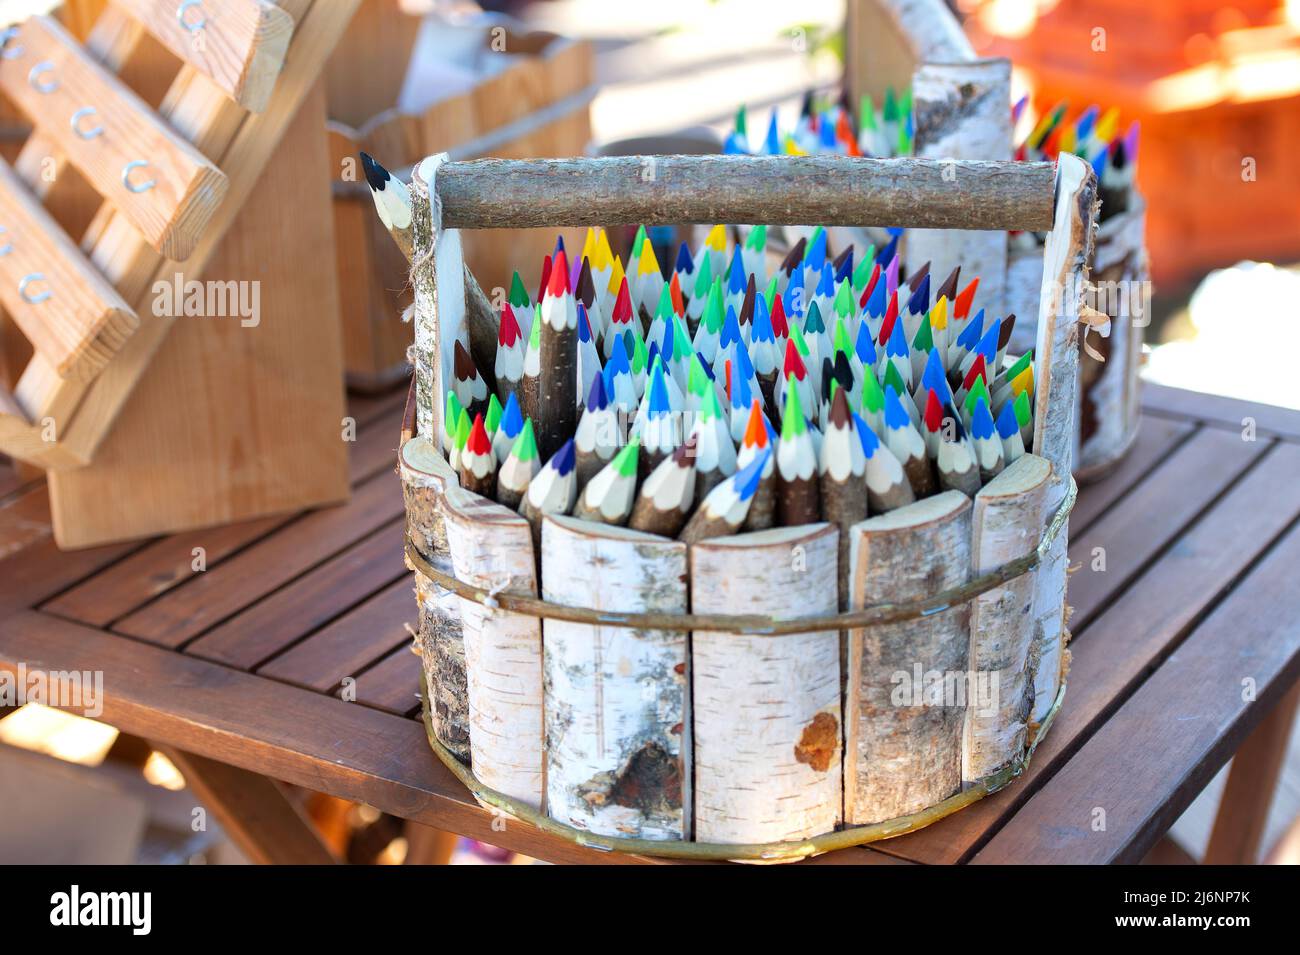 crayons de couleur dans un panier en bois de bouleau Banque D'Images